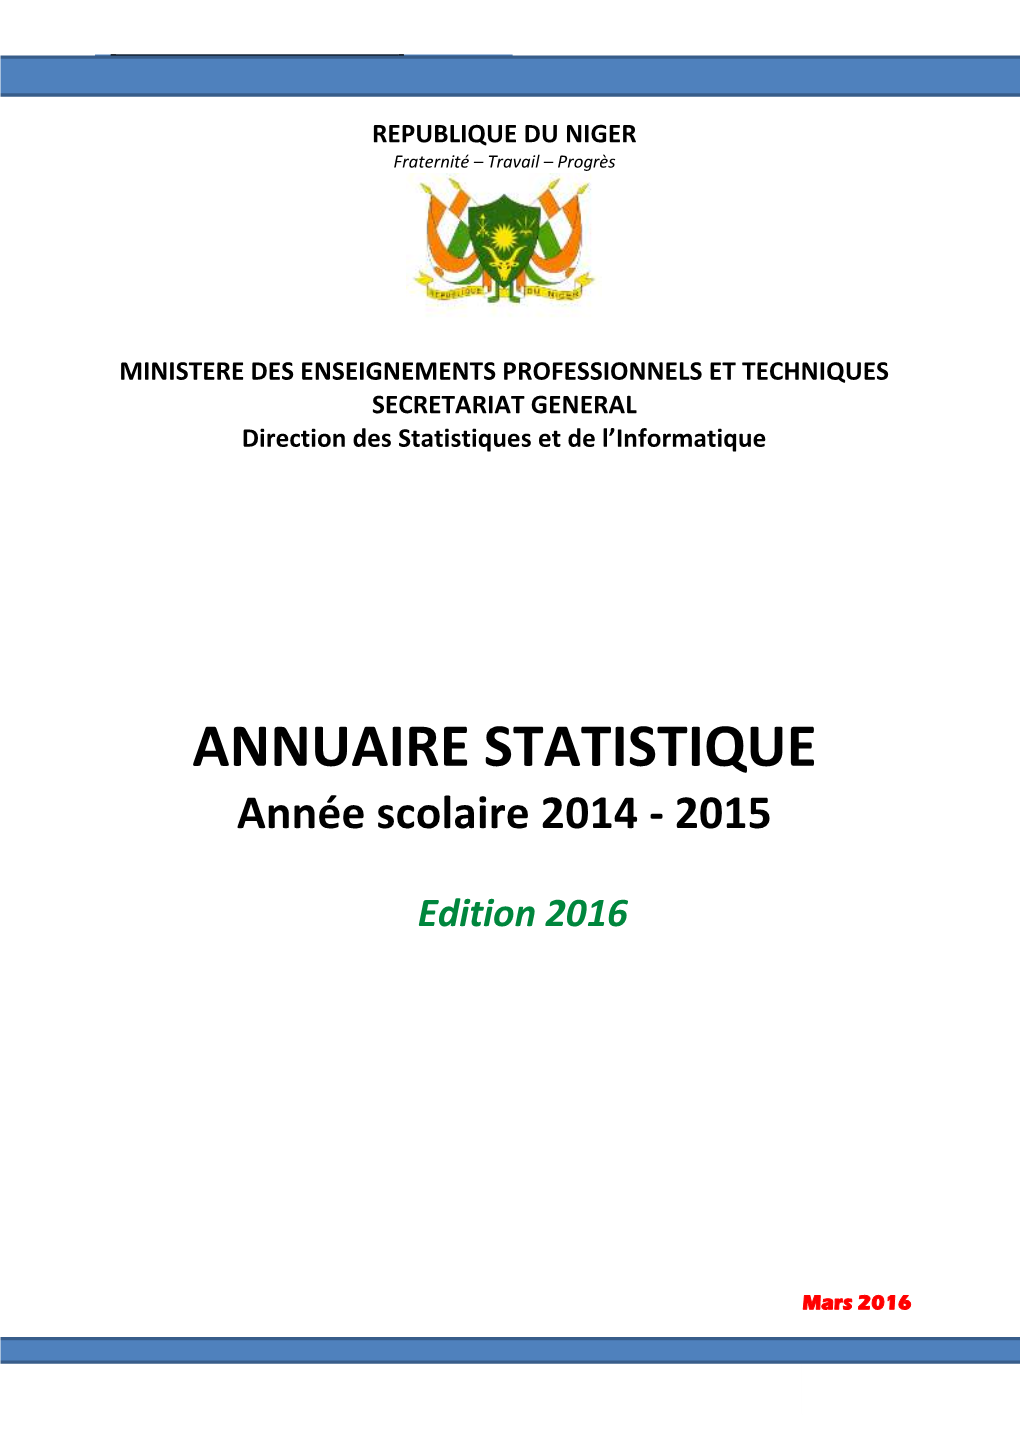 ANNUAIRE STATISTIQUE 2014-201Troisième5 Trimestre 2 MINISTERE DES ENSEIGNEMENTS PROFESSIONNELS ET TECHNIQUES